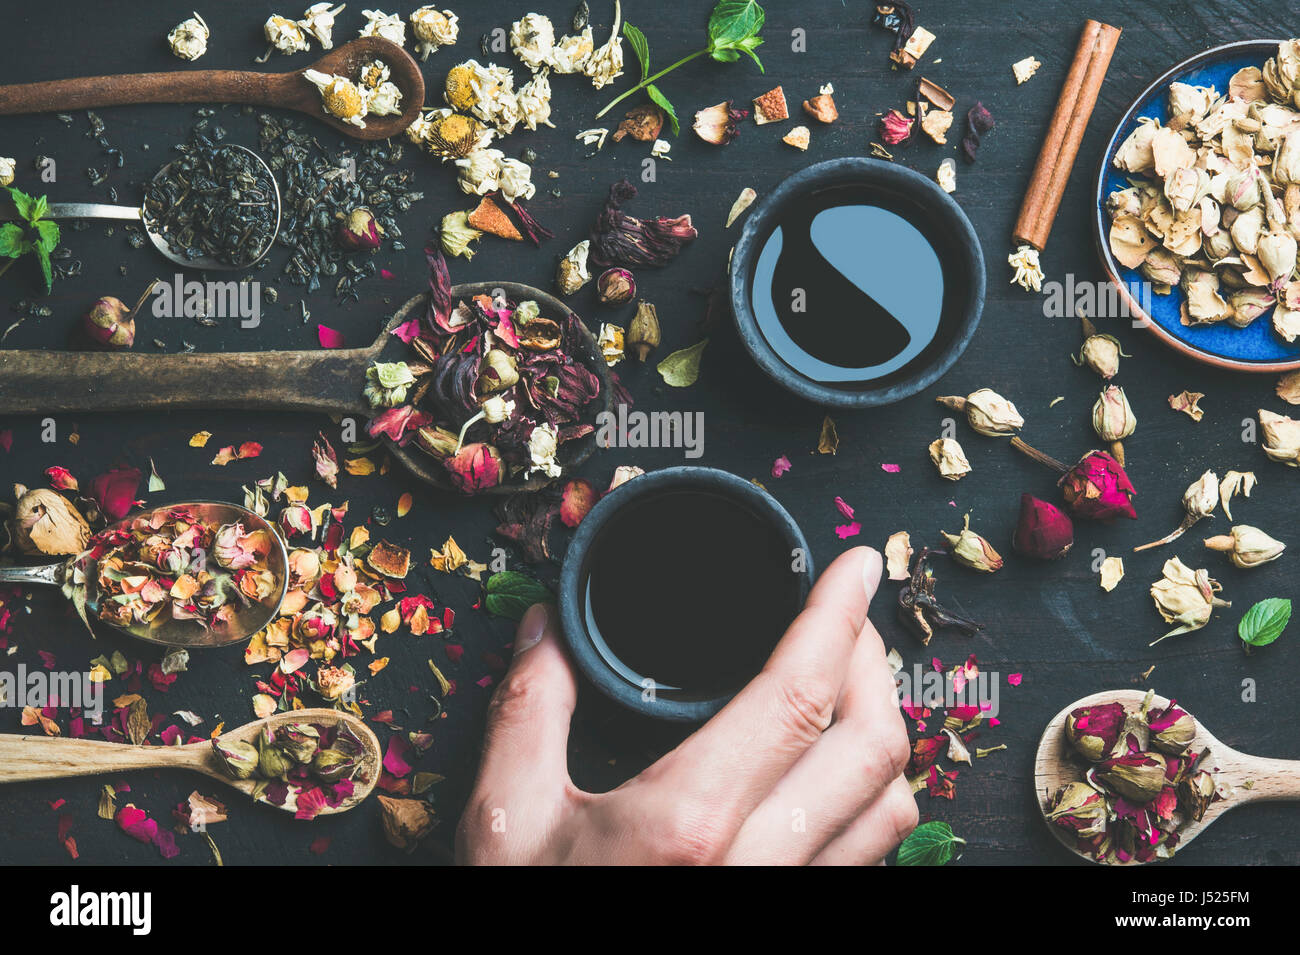 Thé noir chinois dans des tasses grès noir, la main de l'homme tenant une tasse et des cuillères en bois avec des herbes sèches, des boutons de fleurs et feuilles sur un parquet en bois noir backg Banque D'Images